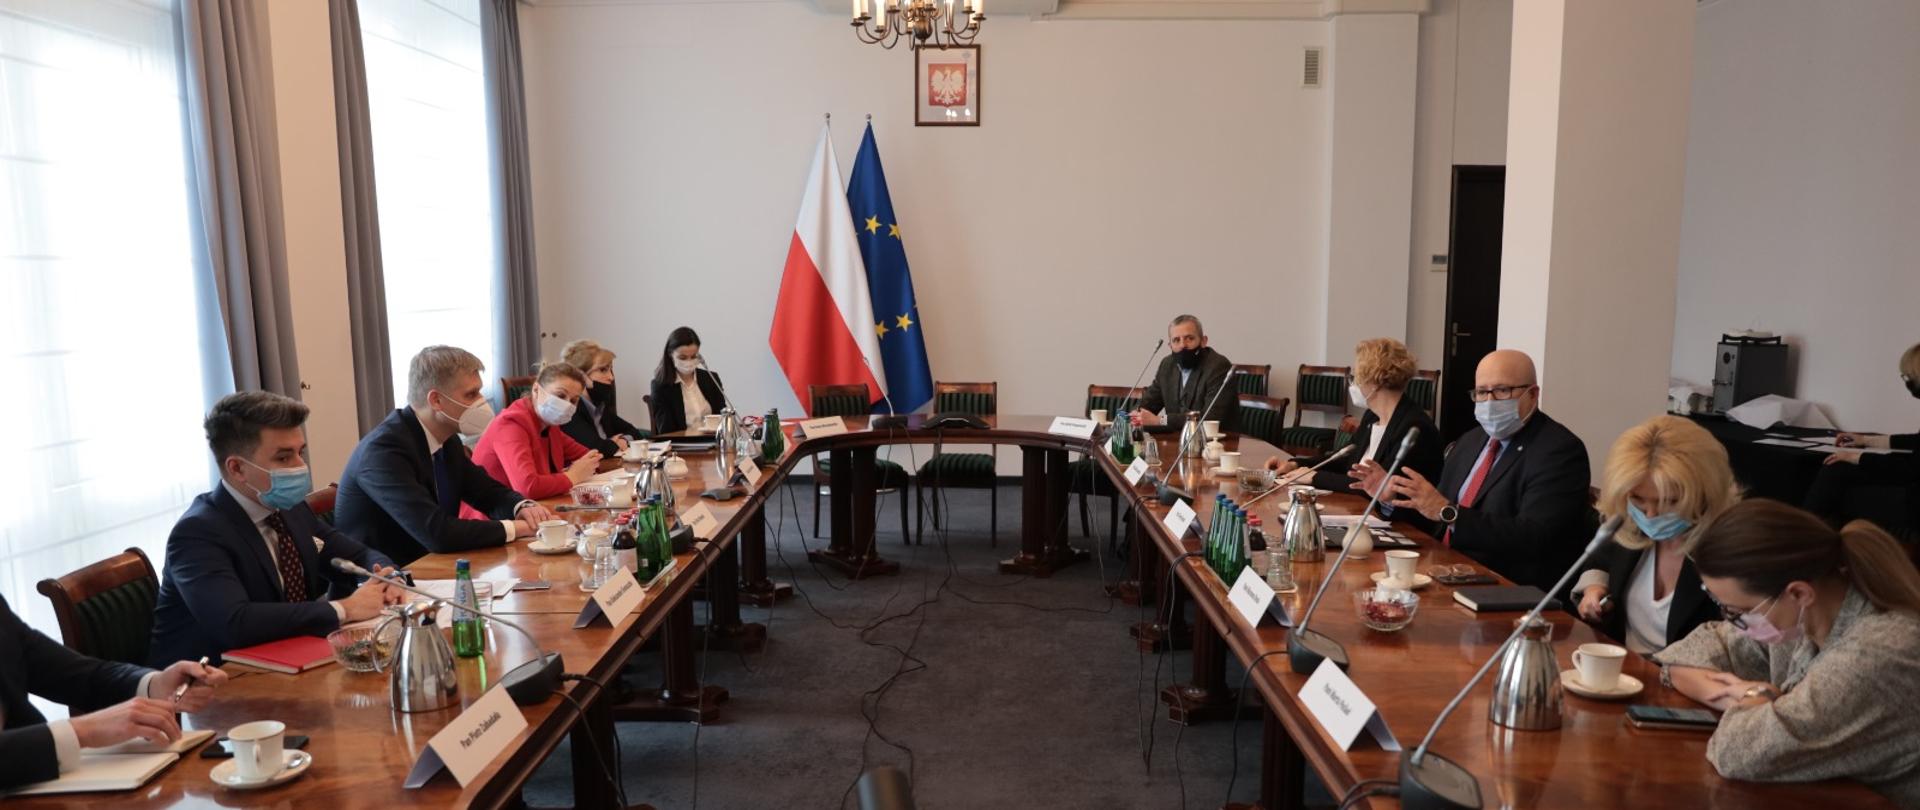 na zdjęciu spotkanie ministra Piotra Nowaka z Amerykańską Izbą Gospodarczą, Minister siedzi za owalnym stołem wraz z pozostałymi uczestnikami spotkania 